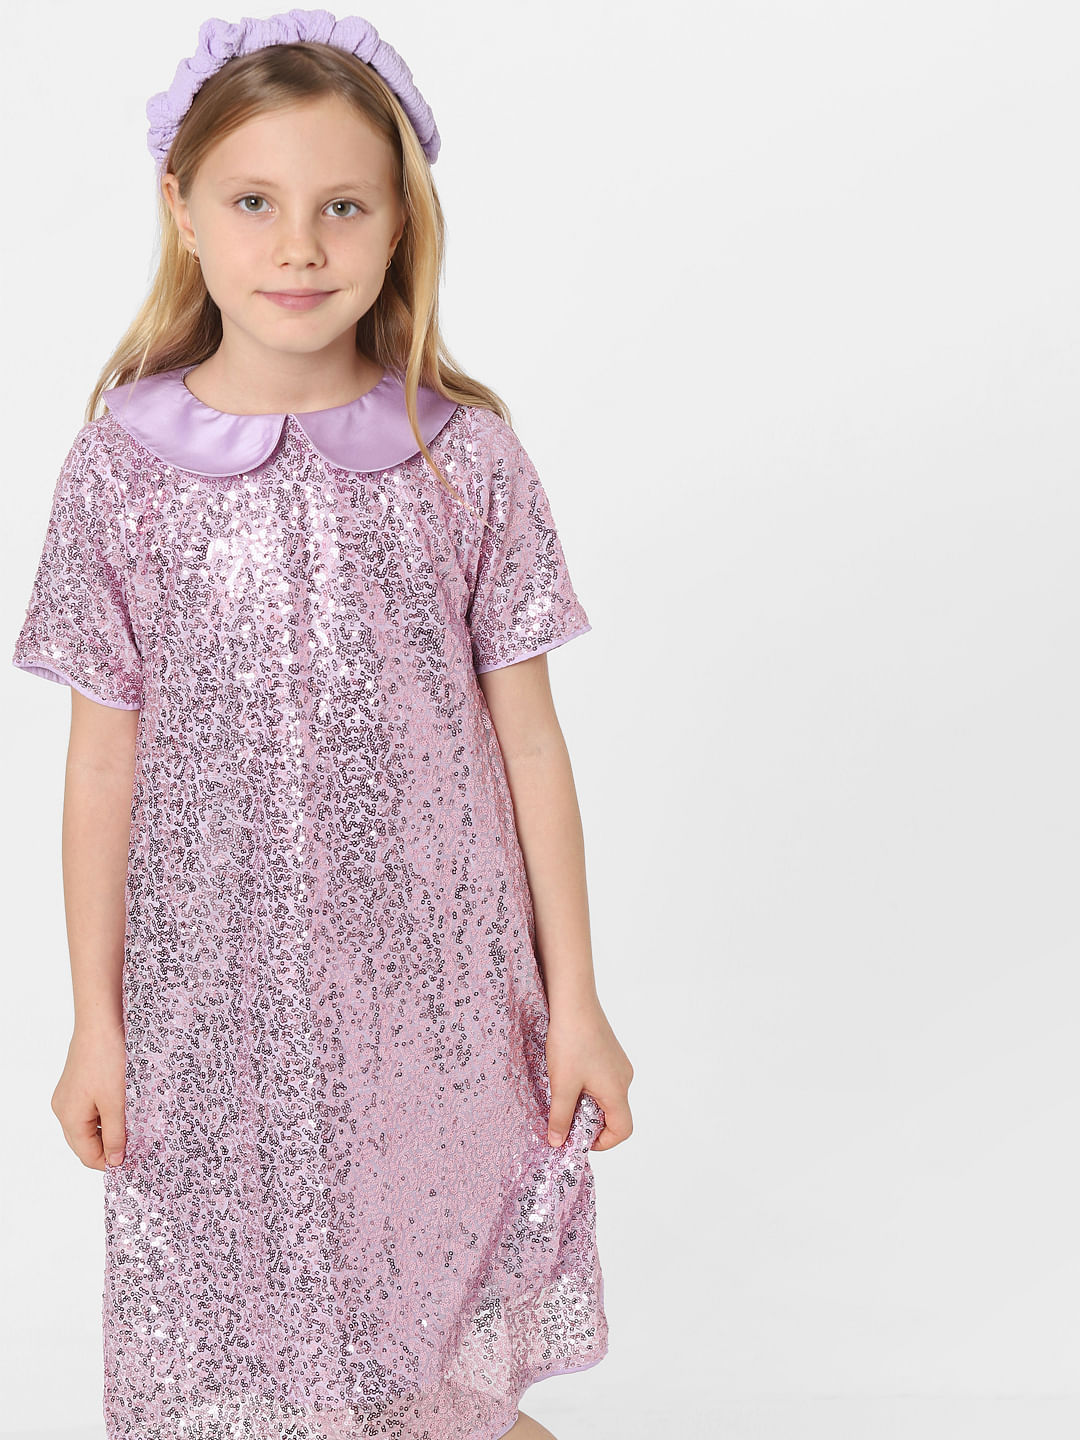 Disco Darling Velvet Sequin Dress – Dollfaced Kids